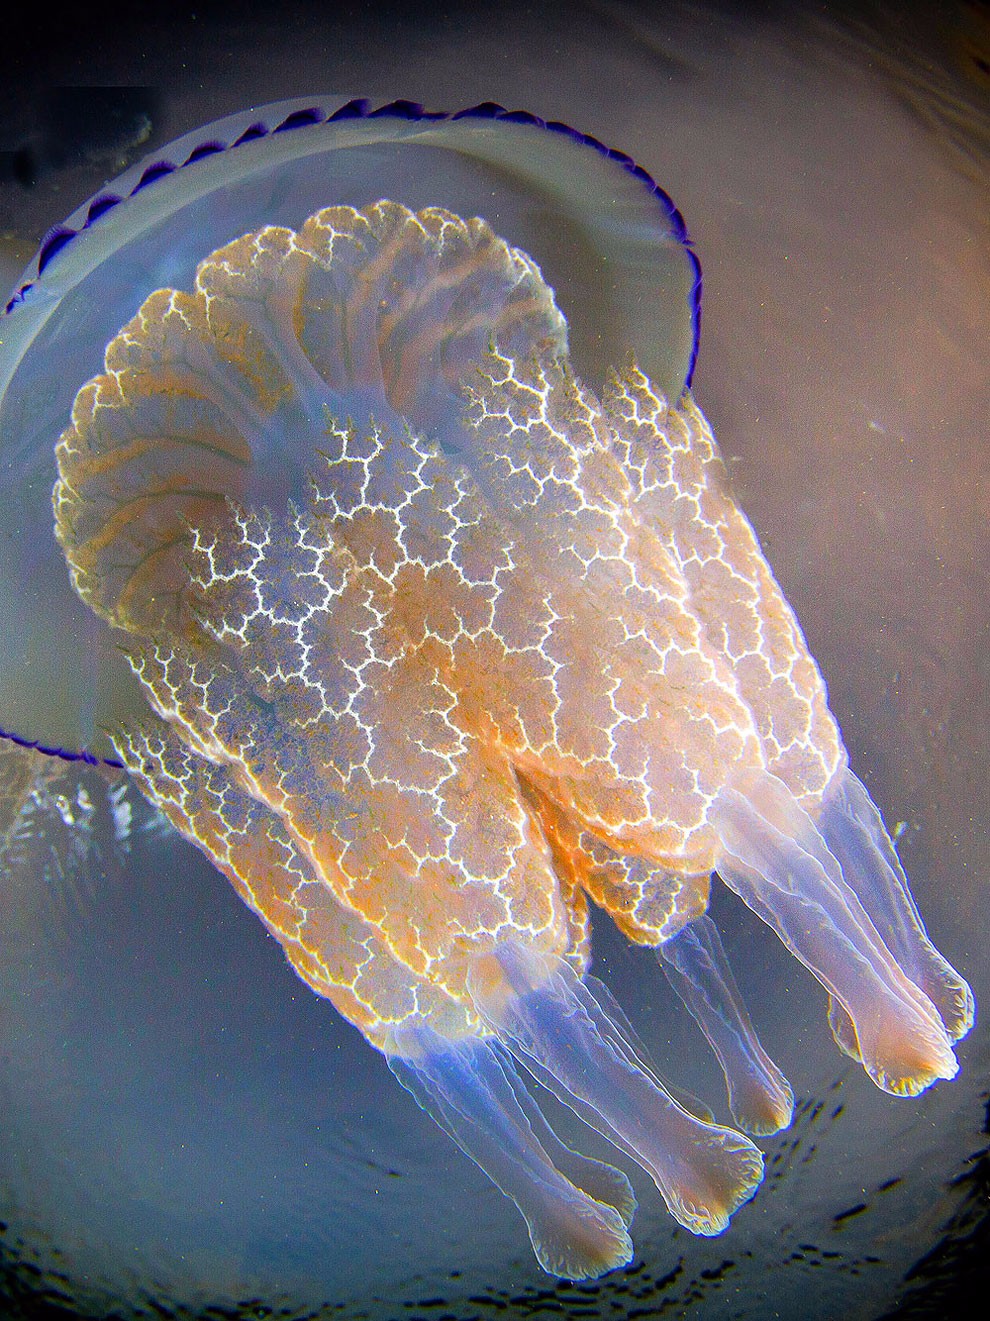 令人惊叹的水母照片 散发淡蓝色微光的神奇动物